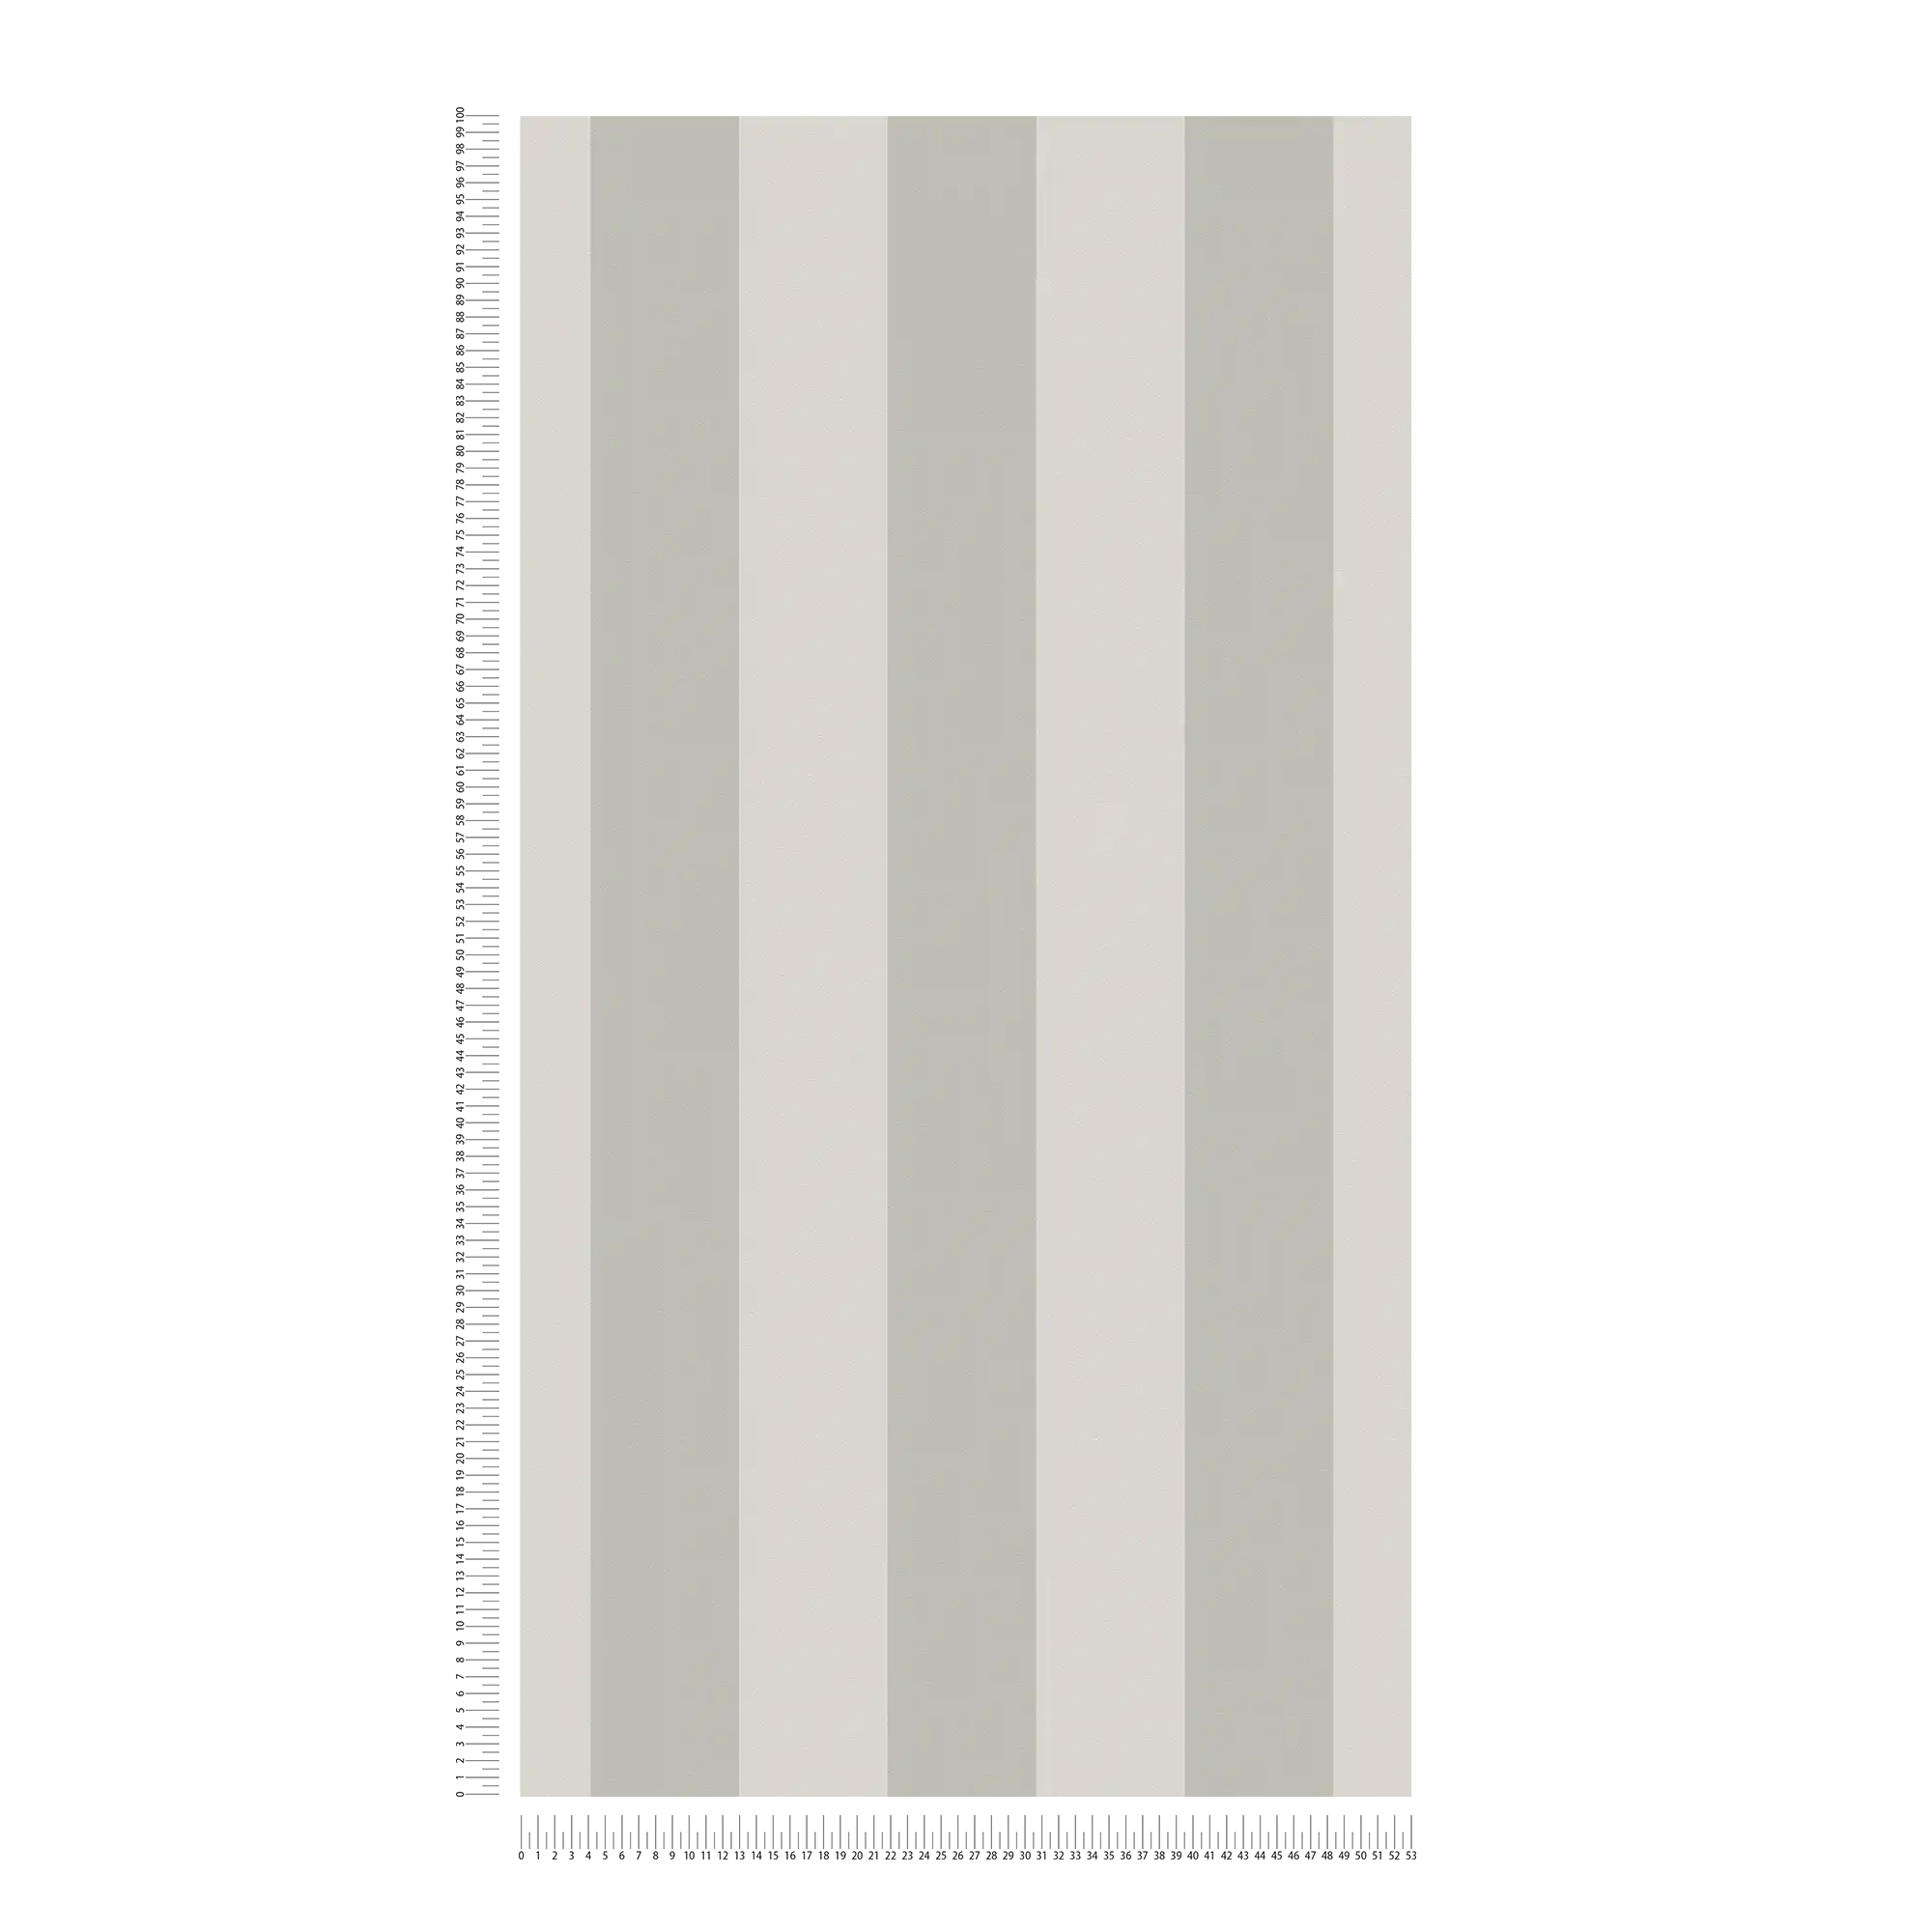             Vliesbehang met blokstrepen en lichte structuur - grijs
        